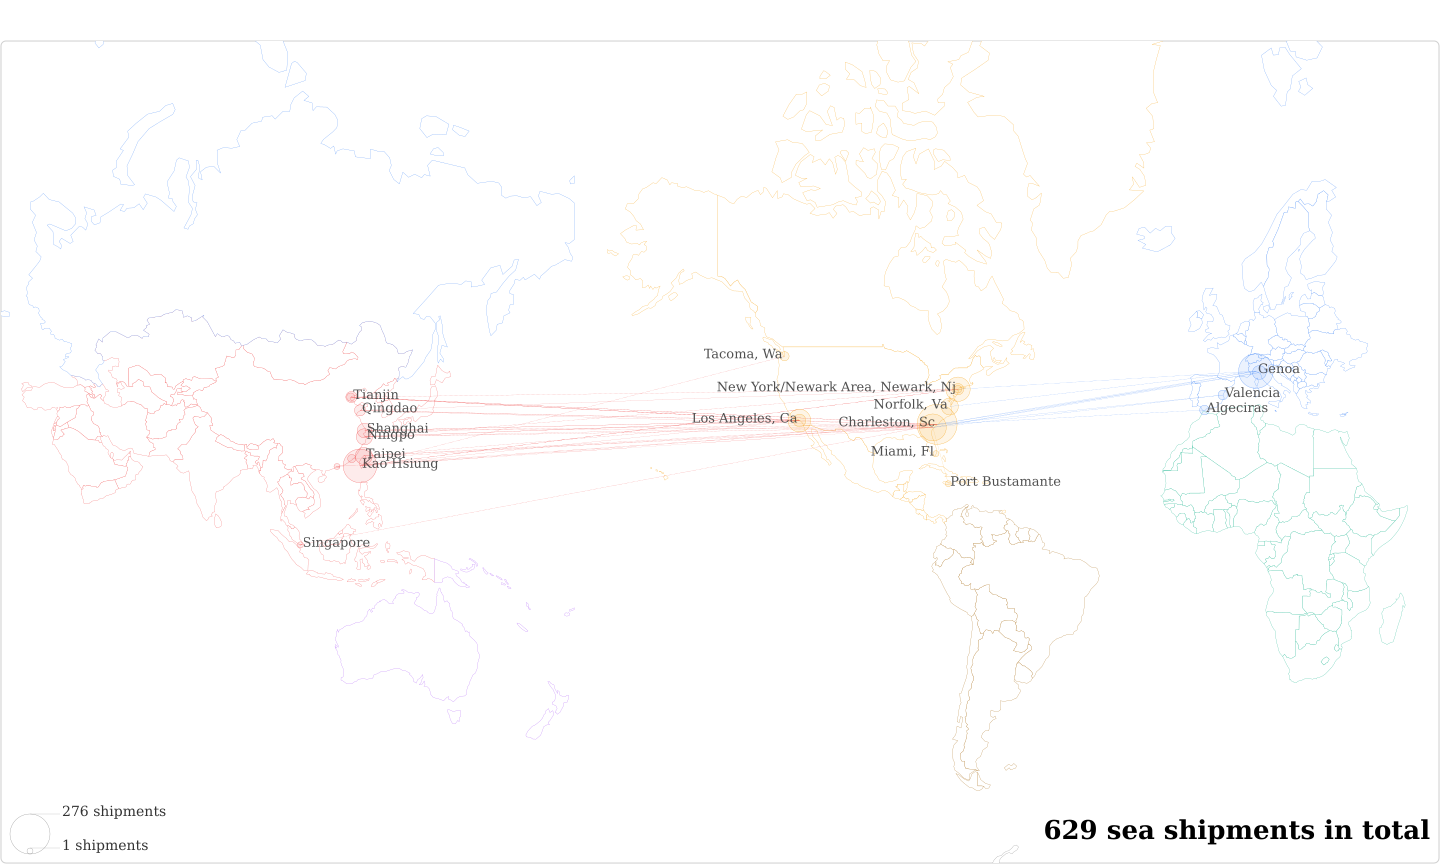 Bonomi North America's Imports Per Country Map